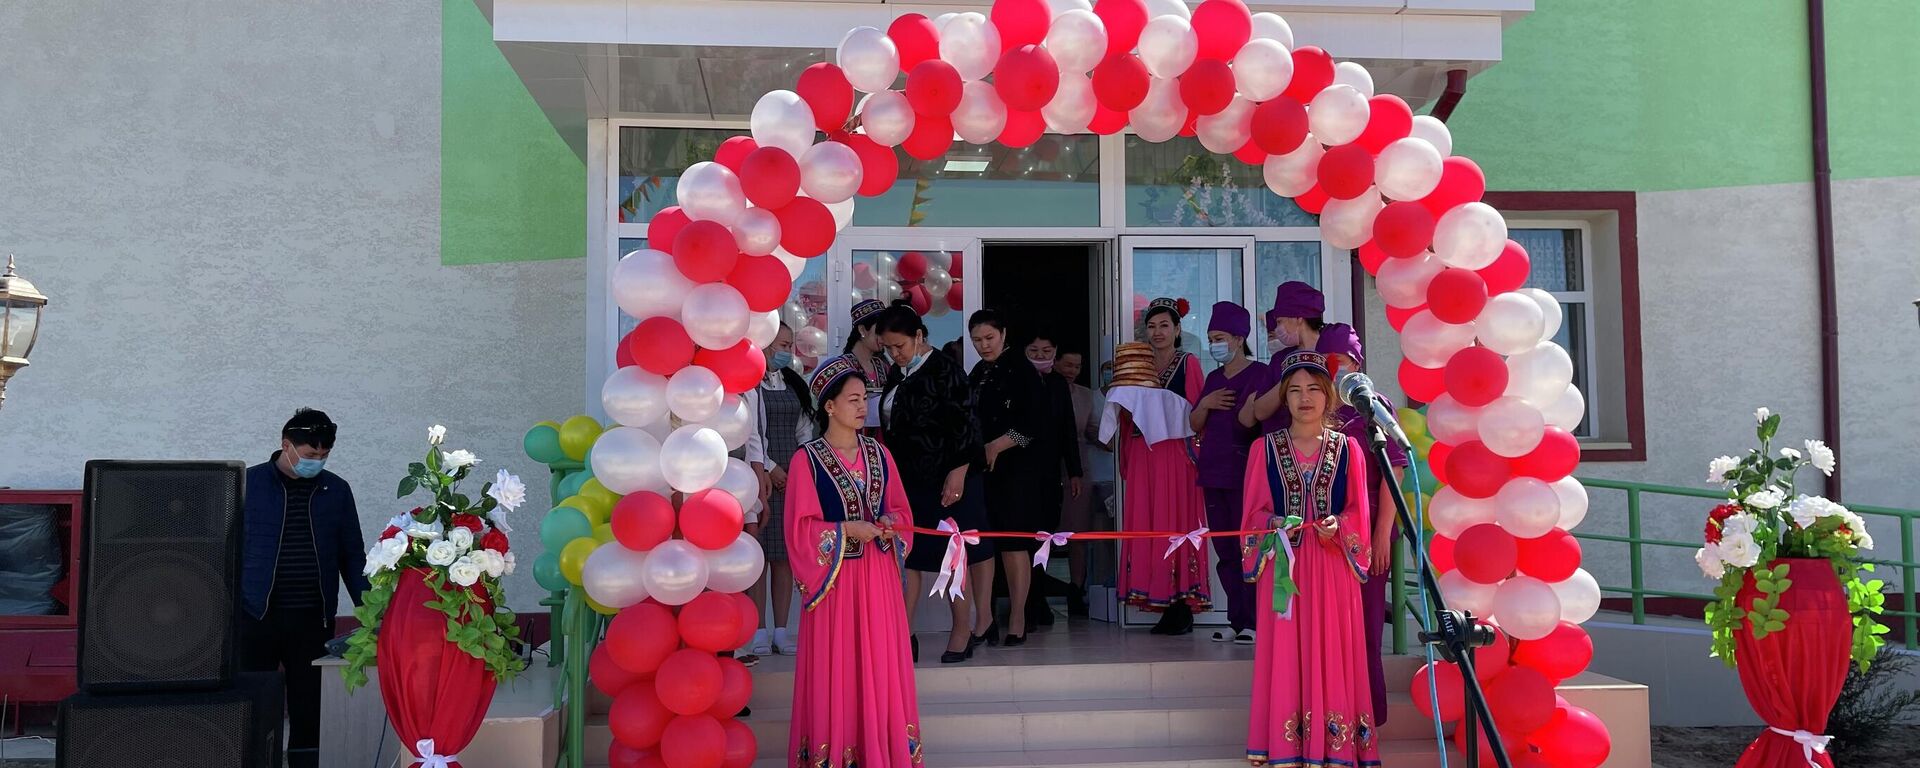 В Муйнаке открыли два новых современных детских сада - Sputnik Узбекистан, 1920, 02.04.2021